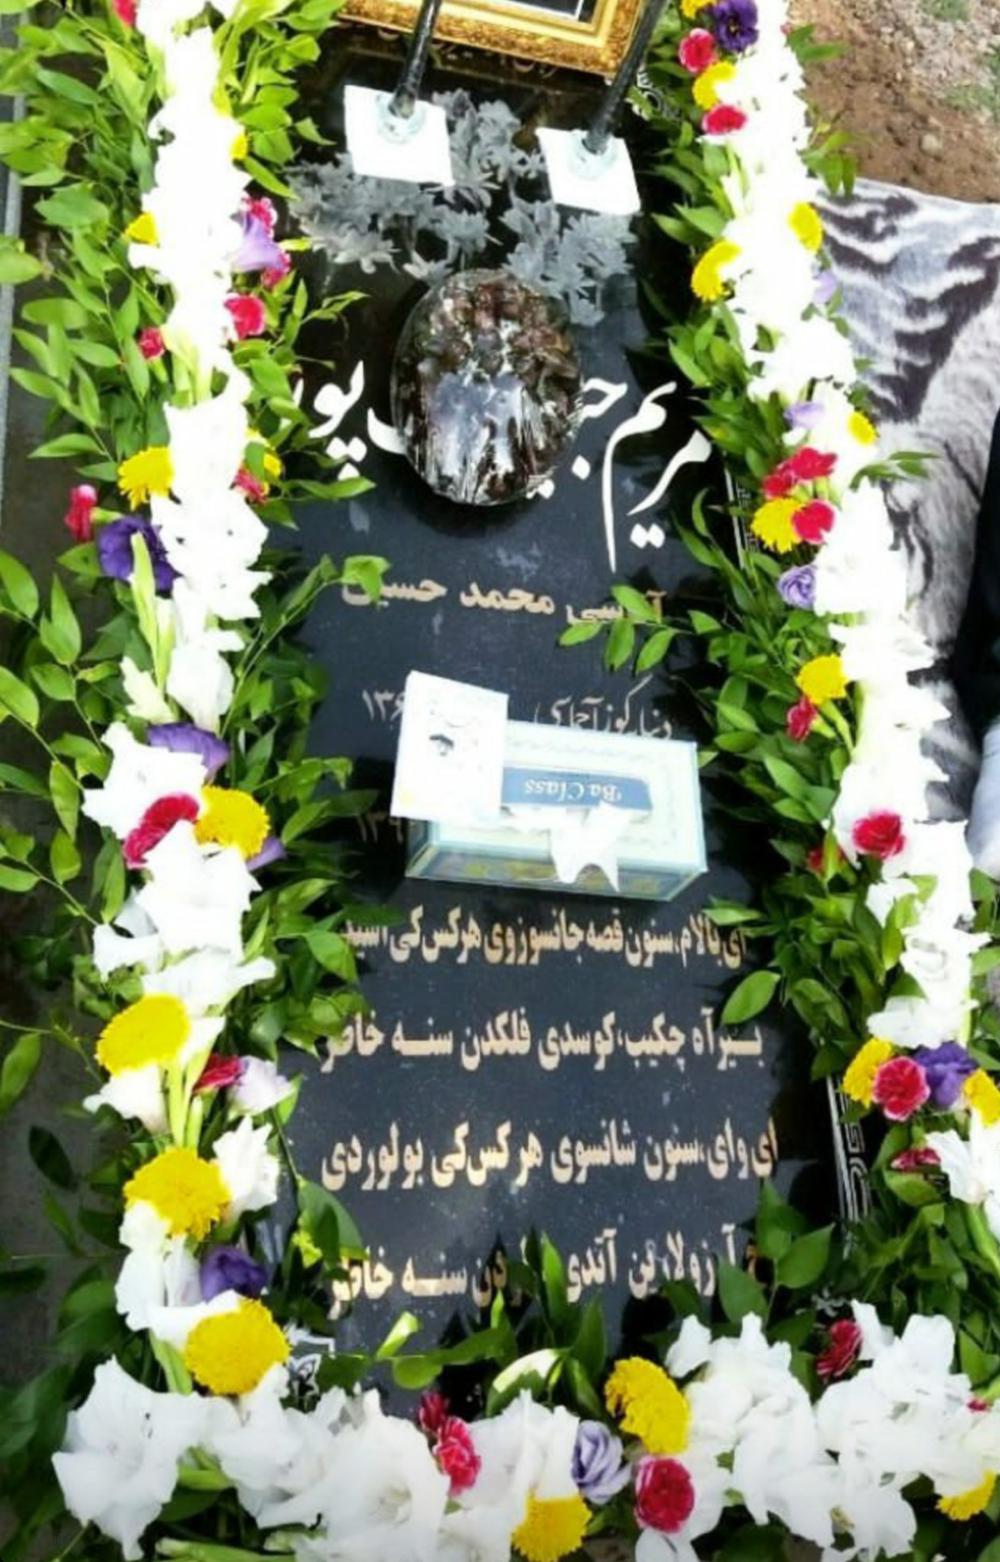 یادبود شادروان گل پر پر مریم حبیب پور